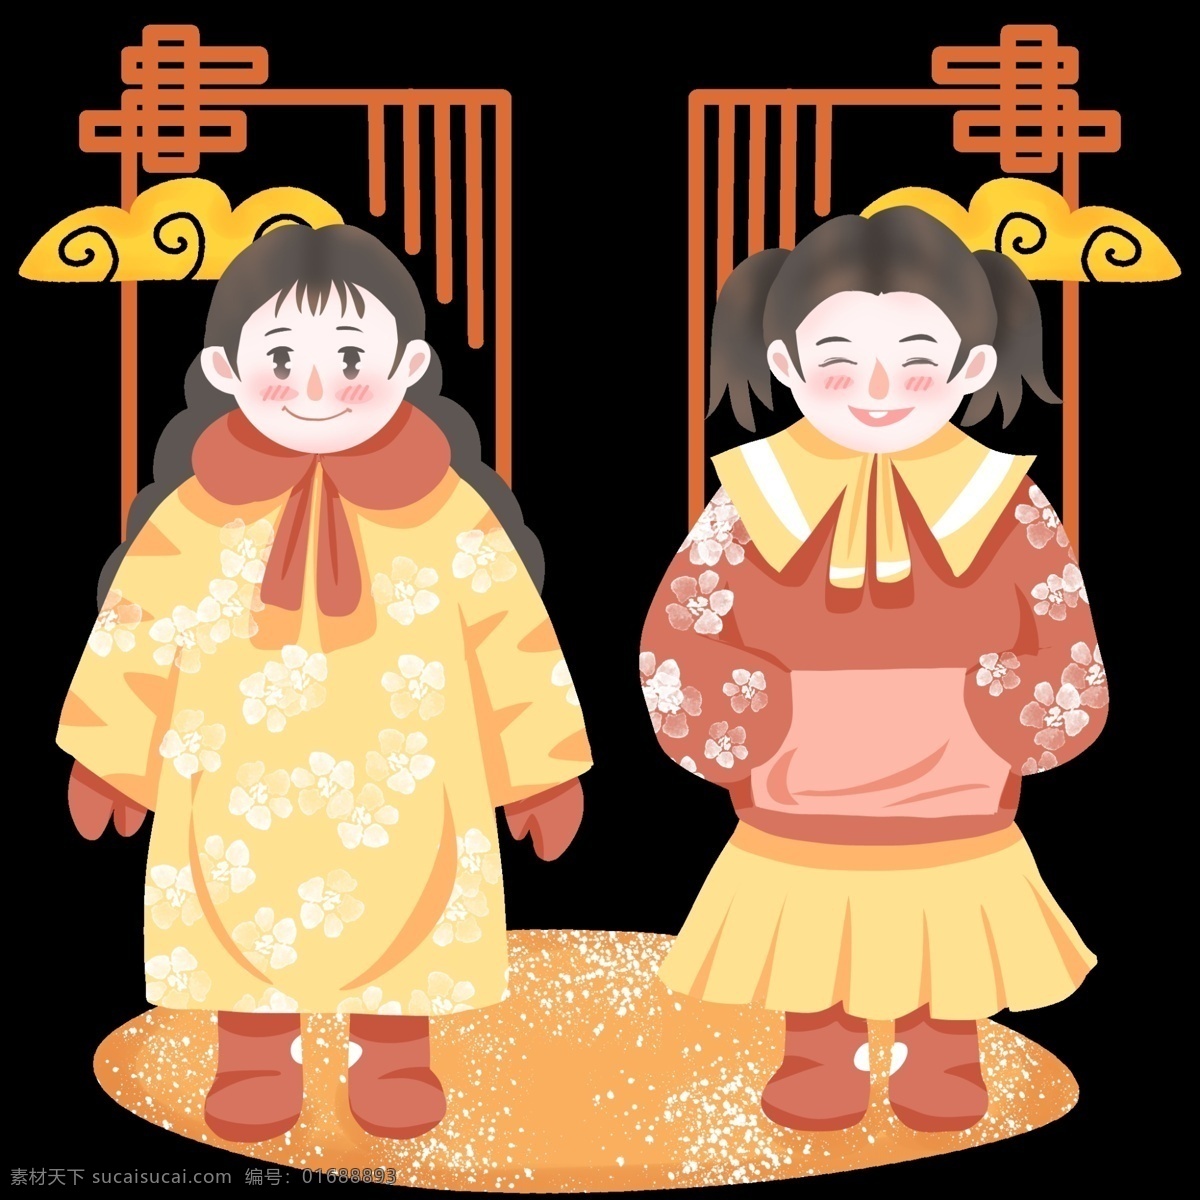 猪年 中式 女孩 贺年 图 新年 中国风边框 红色 手绘卡通人物 2019 农历 金黄祥云 儿童 插画